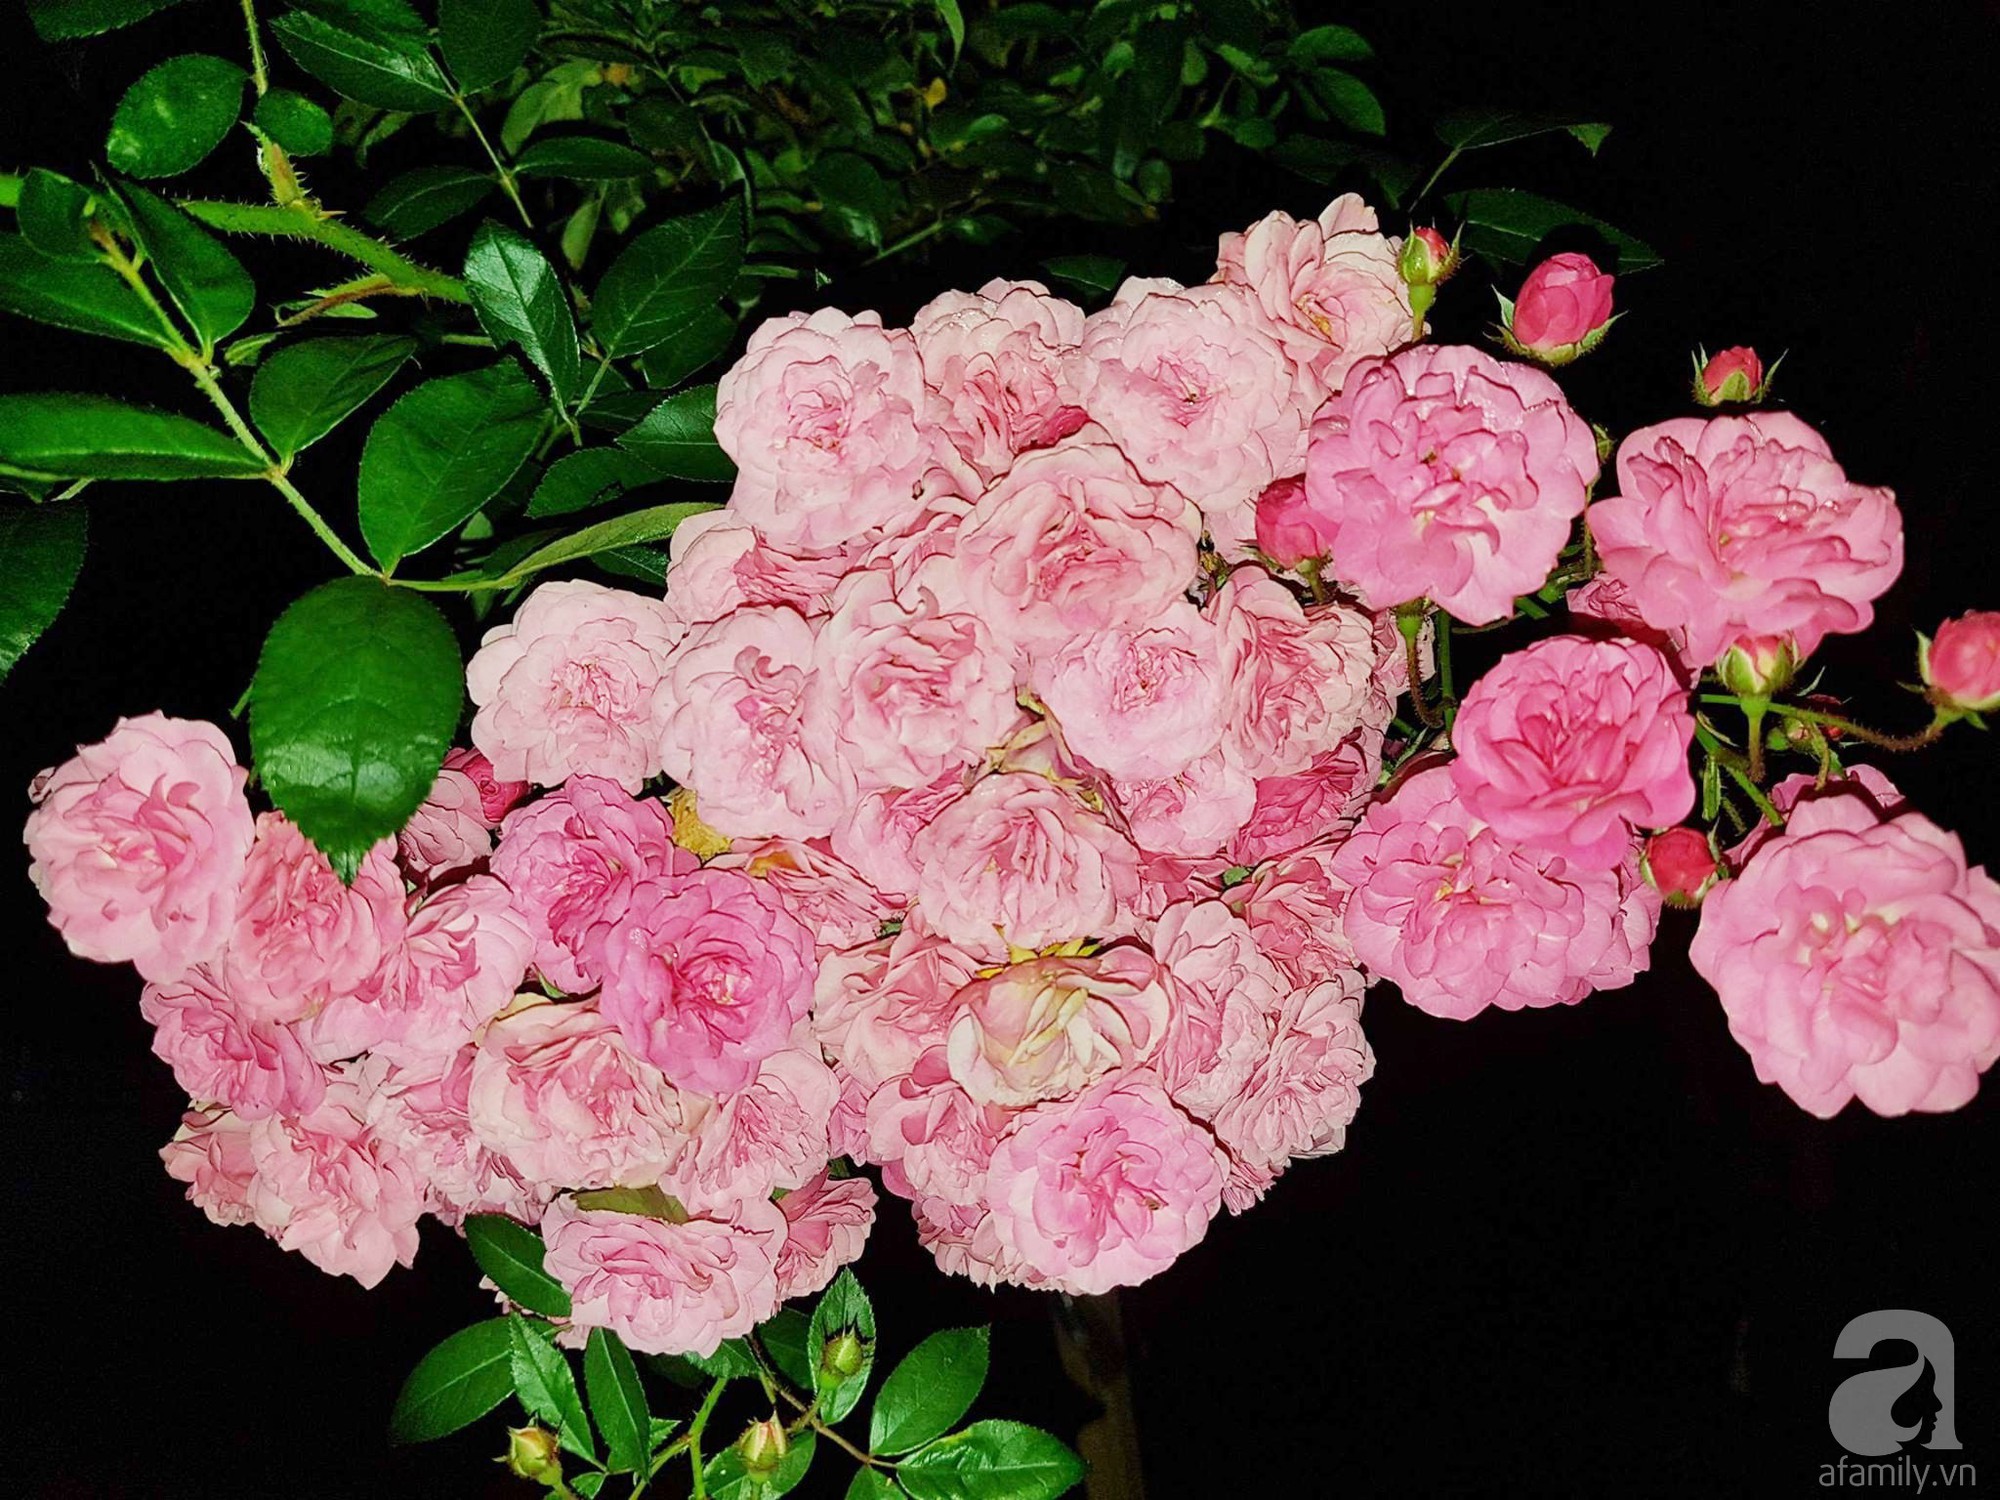 Mê mẩn khu vườn hoa hồng đẹp như mơ ở Đà Lạt - Ảnh 25.